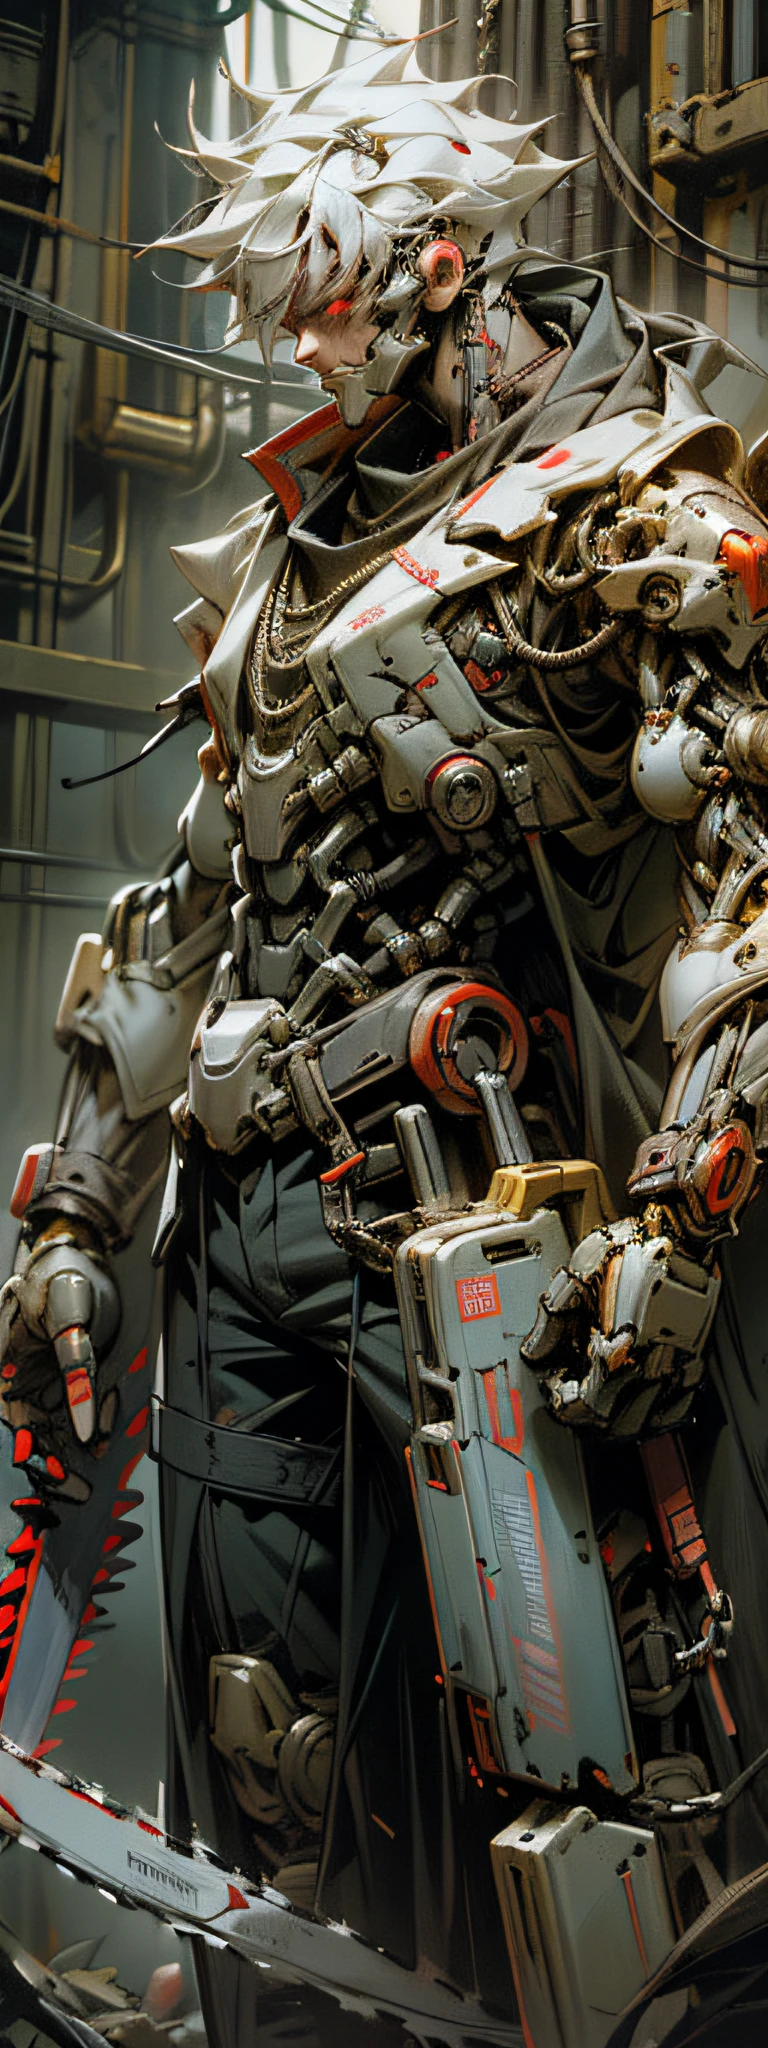 Dark_fantasía,ciberpunk,(sierra de cadena,sierra de cadena man,rojo:1.1),1 hombre,Maravilla mecánica,Presencia robótica,Cybernetic guardian,